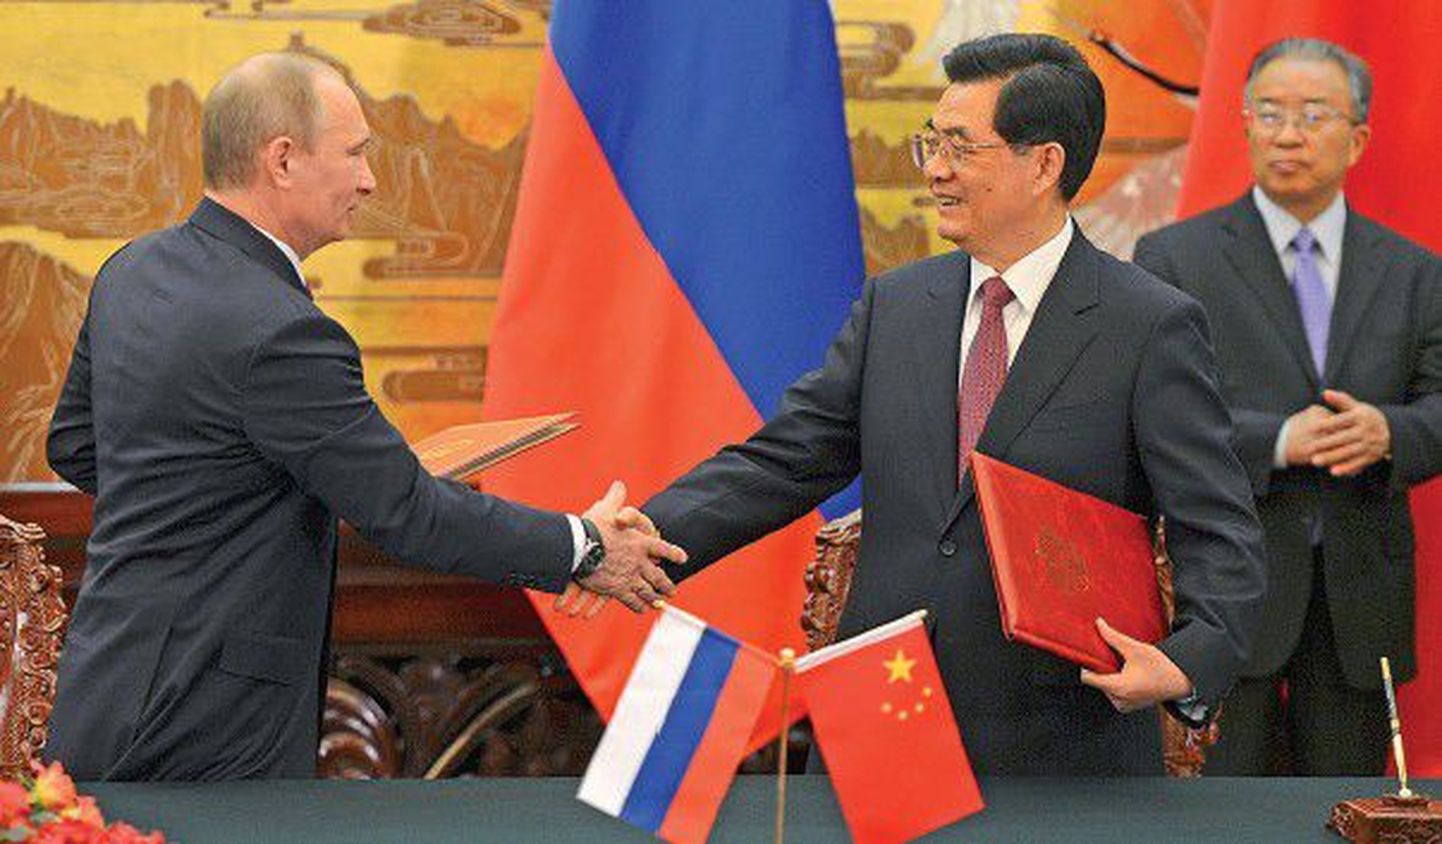 Президент России Владимир Путин (слева) обменивается рукопожатием с председателем КНР Ху Цзиньтао во время церемонии подписания в Пекине совместного заявления.